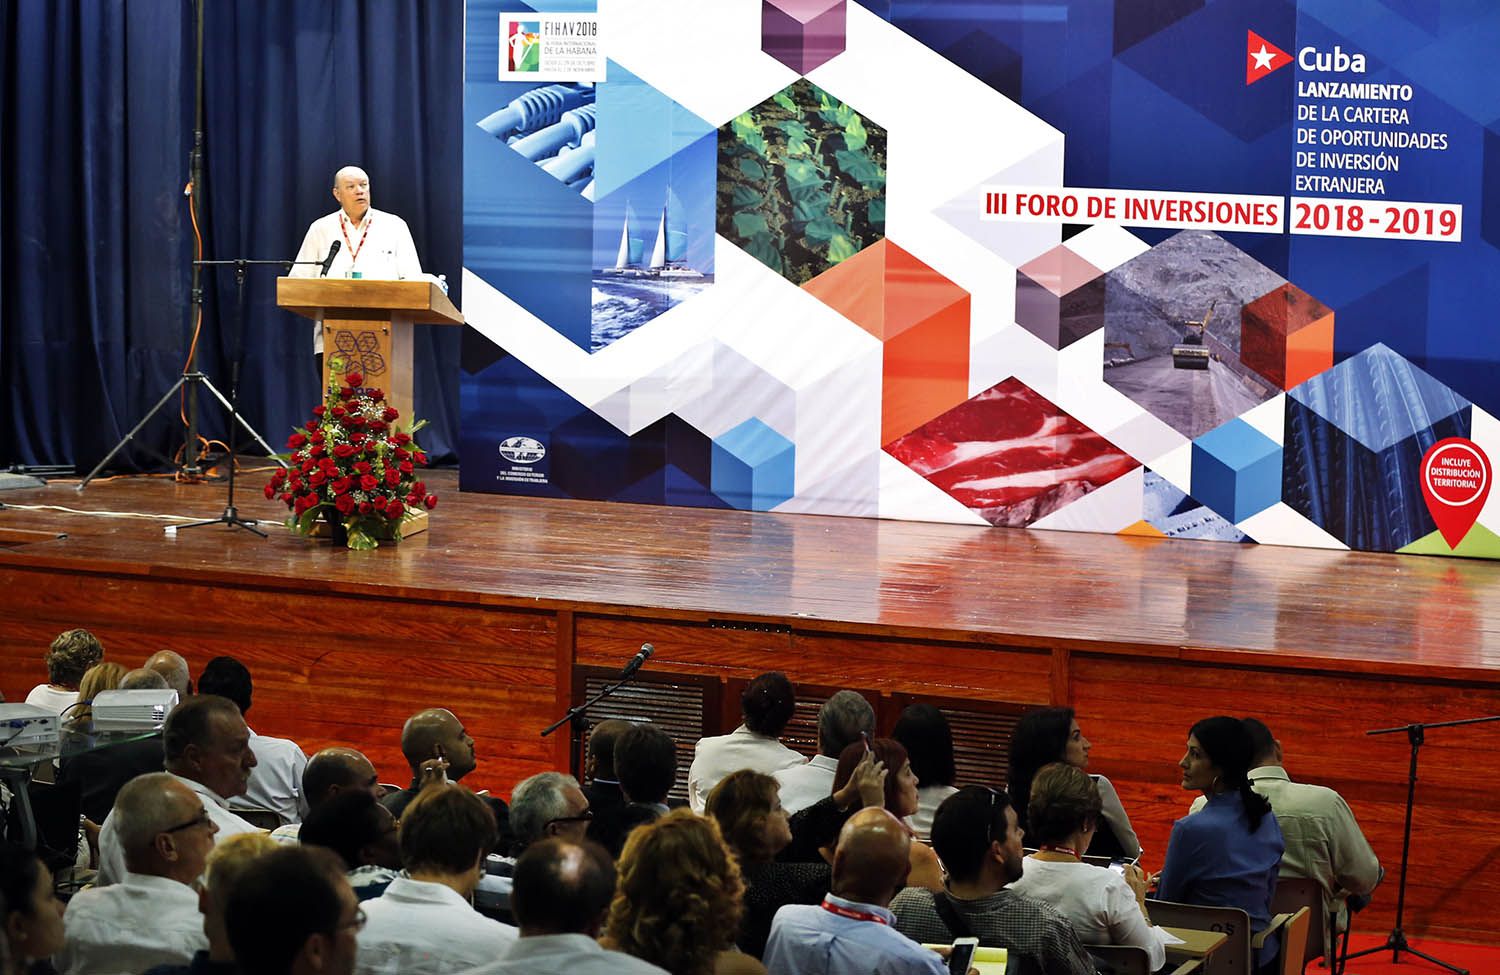 El ministro del Comercio Exterior de Cuba, Rodrigo Malmierca, presenta la nueva cartera para la Inversión extranjera en Cuba hoy, miércoles 31 de octubre del 2018, durante la 36 Feria Internacional de La Habana Fihav 2018. Foto: Ernesto Mastrascusa / EFE.